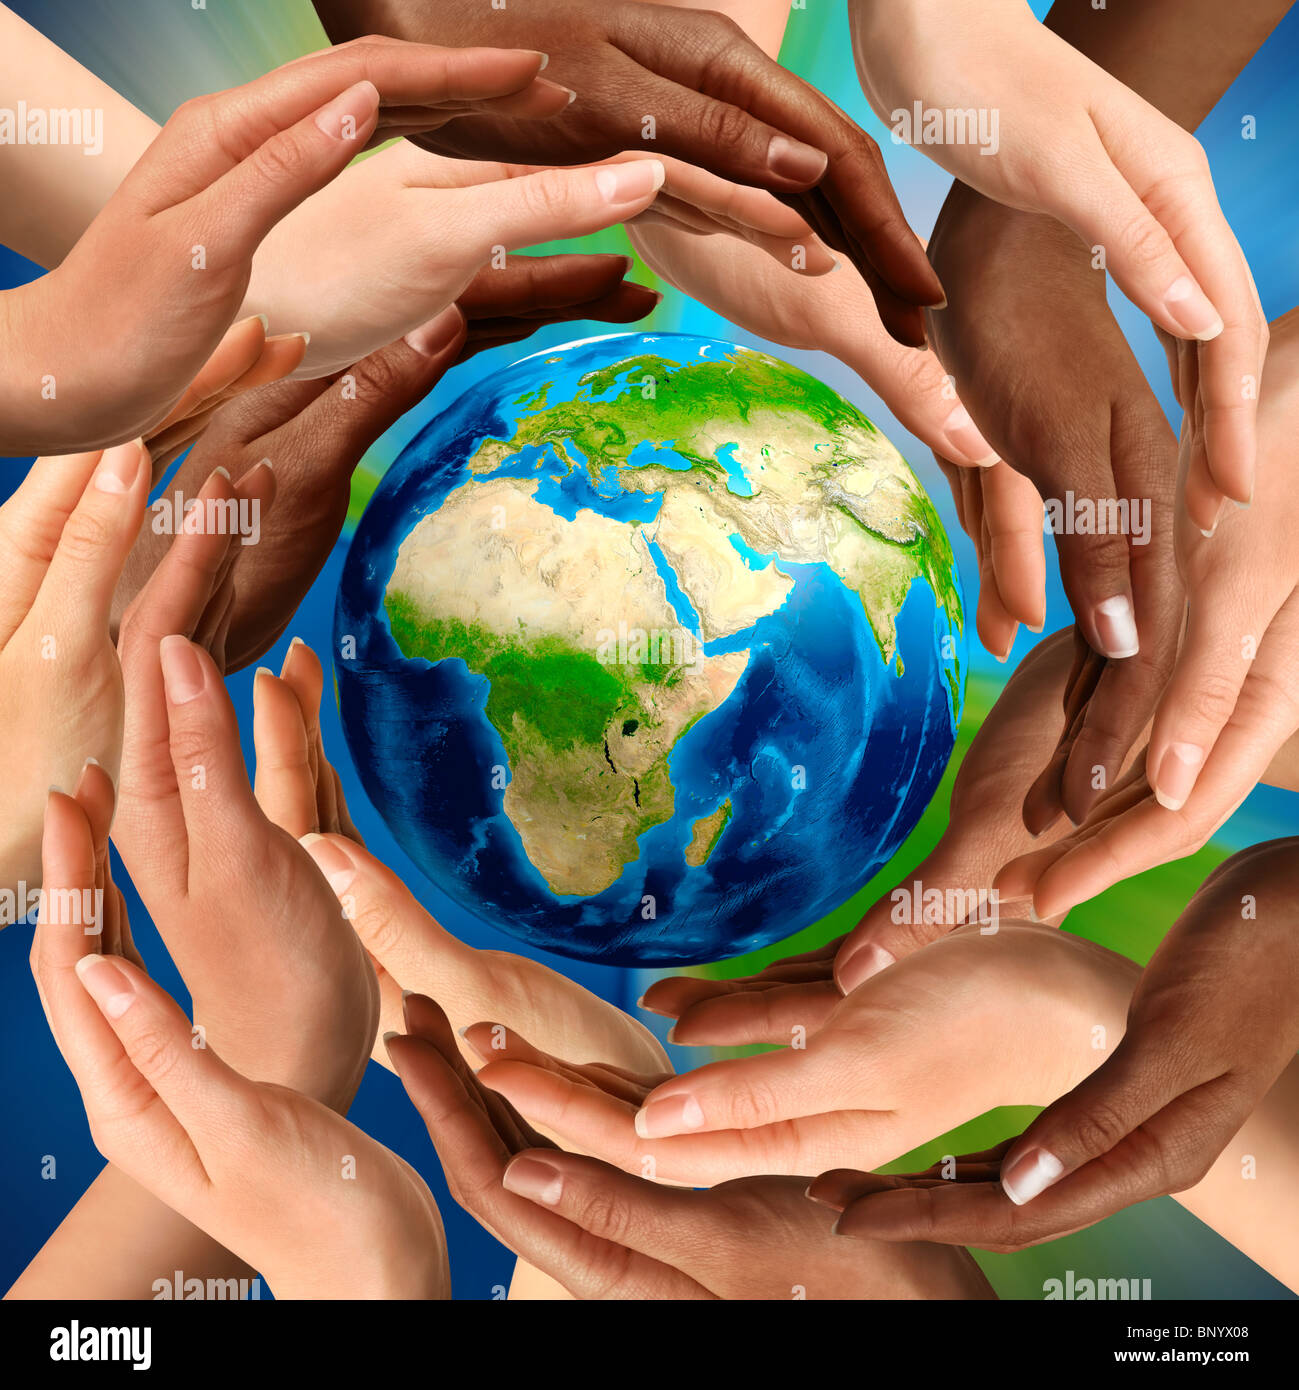 Hermoso símbolo conceptual del globo terráqueo multirracial con manos humanas alrededor de ella. La unidad y la paz mundial concepto. Foto de stock